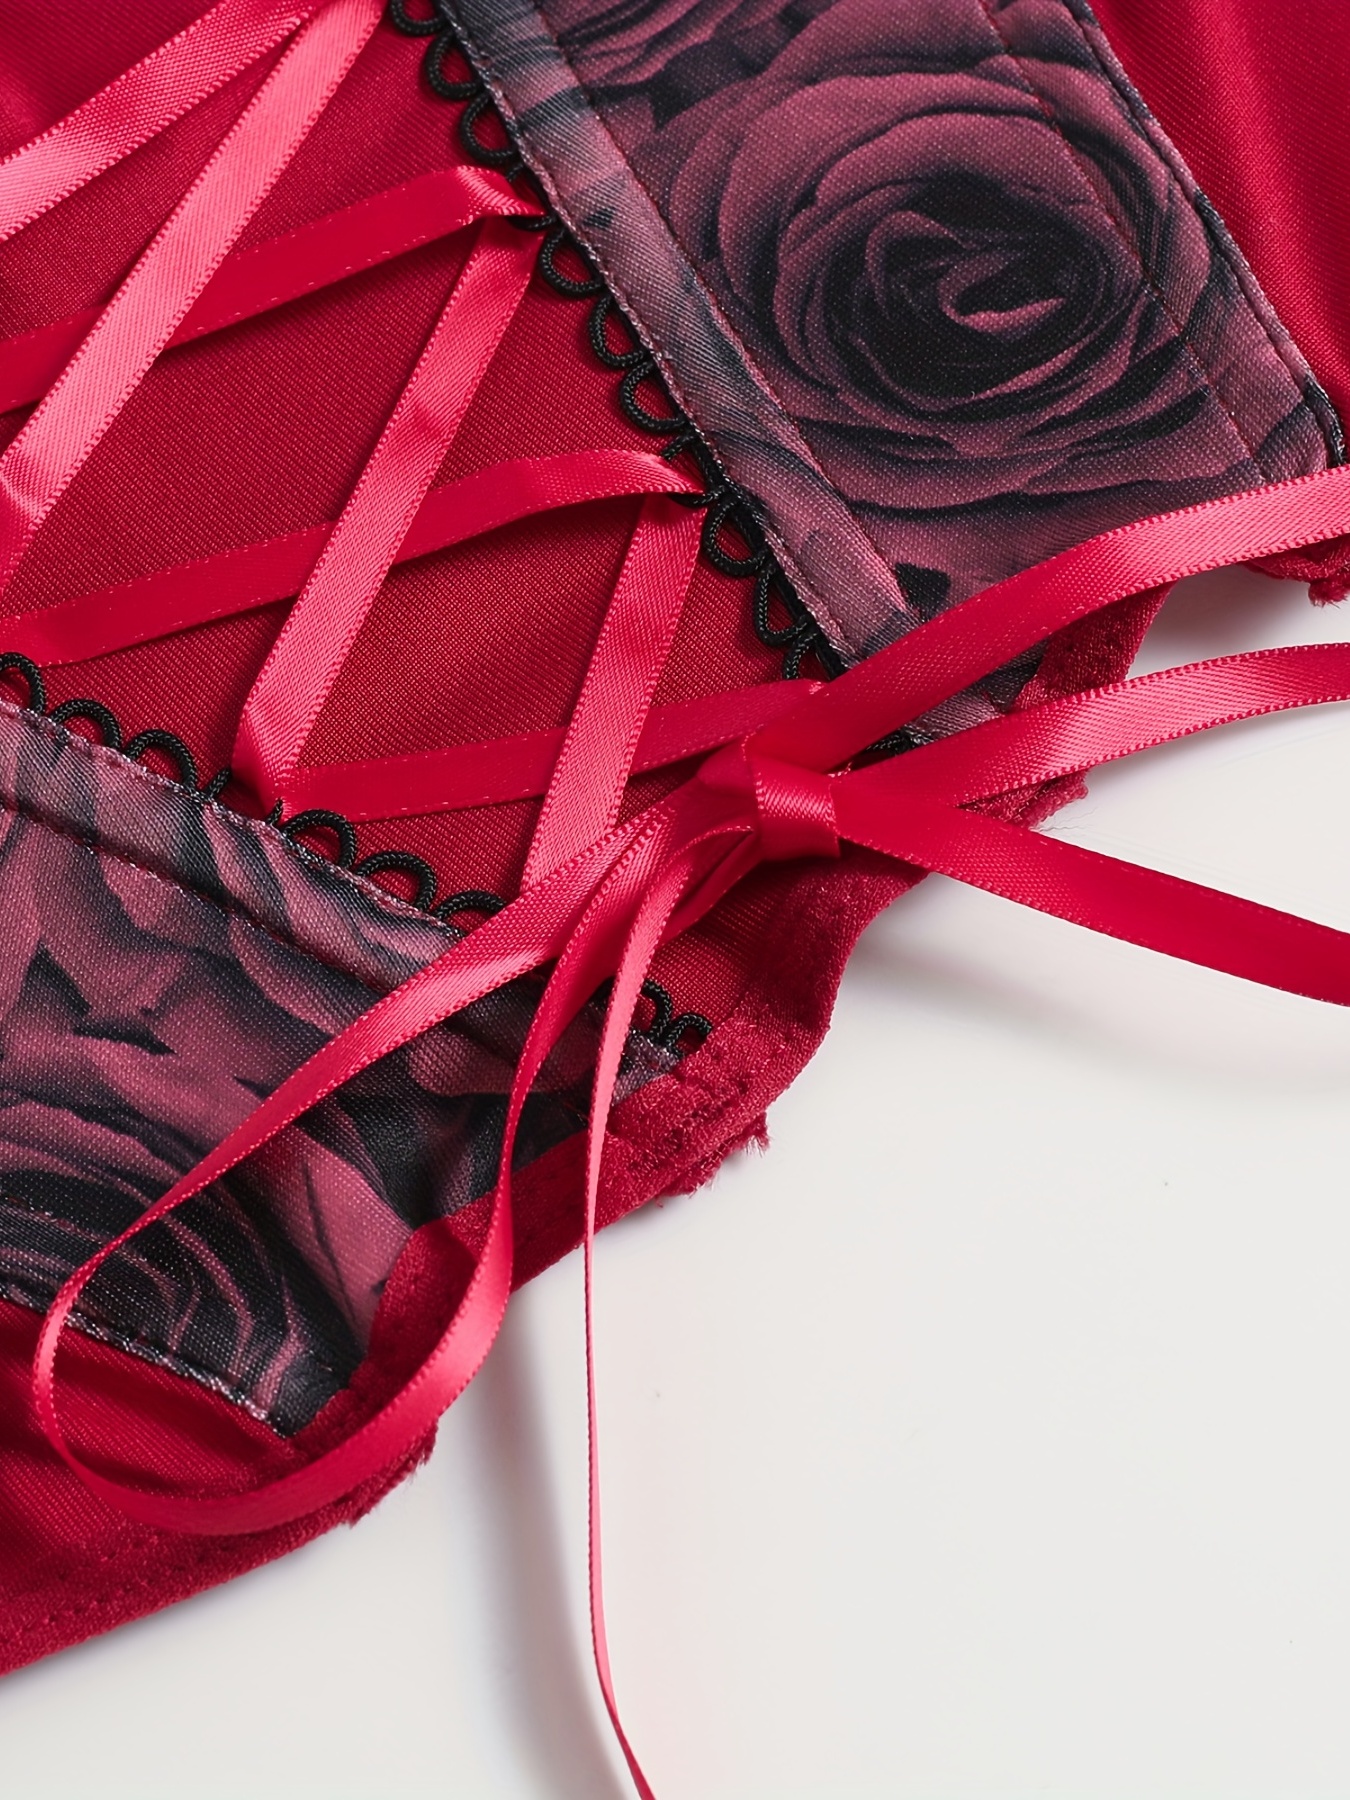 Floral Lace Wireless Bra, Cut Out Sheer Split Bra, Women's Sexy Lingerie &  Underwear